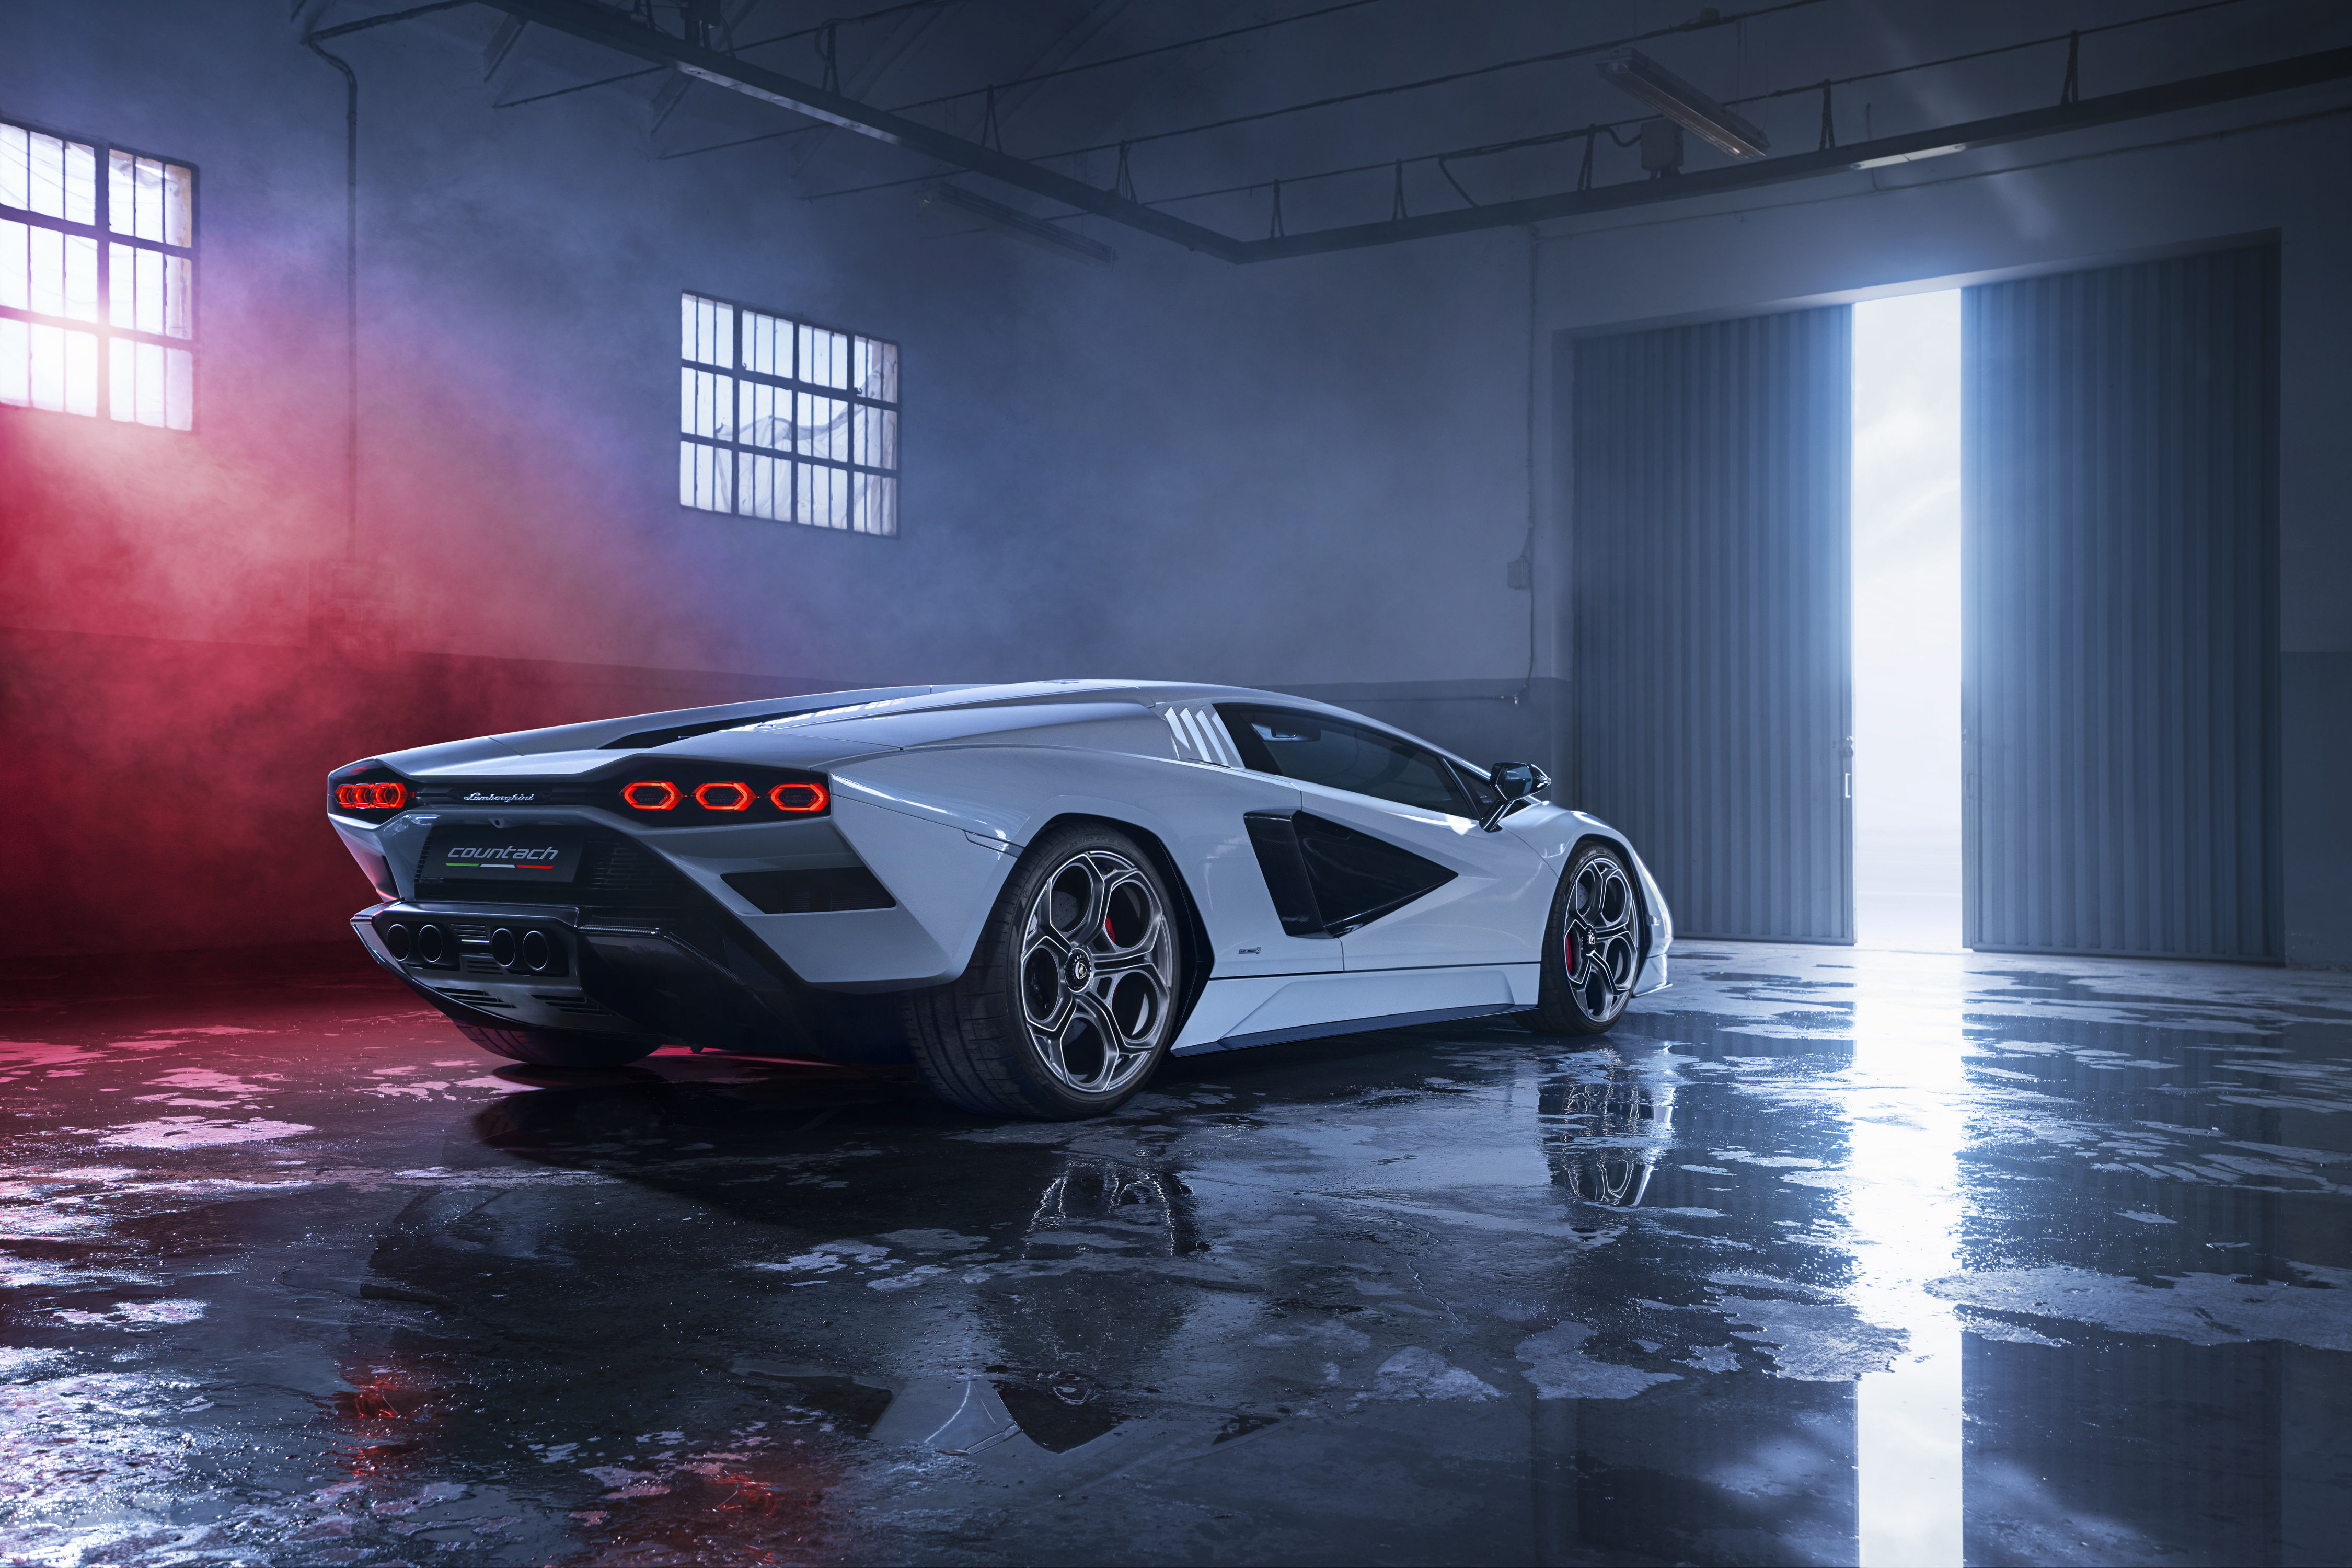 Khám phá Lamborghini Countach - một bước nhảy vọt vào quá khứ với mẫu siêu xe huyền thoại này. Thiết kế đẹp mê hồn cùng động cơ mạnh mẽ, bạn sẽ không muốn bỏ lỡ cơ hội chiêm ngưỡng chiếc xe này.